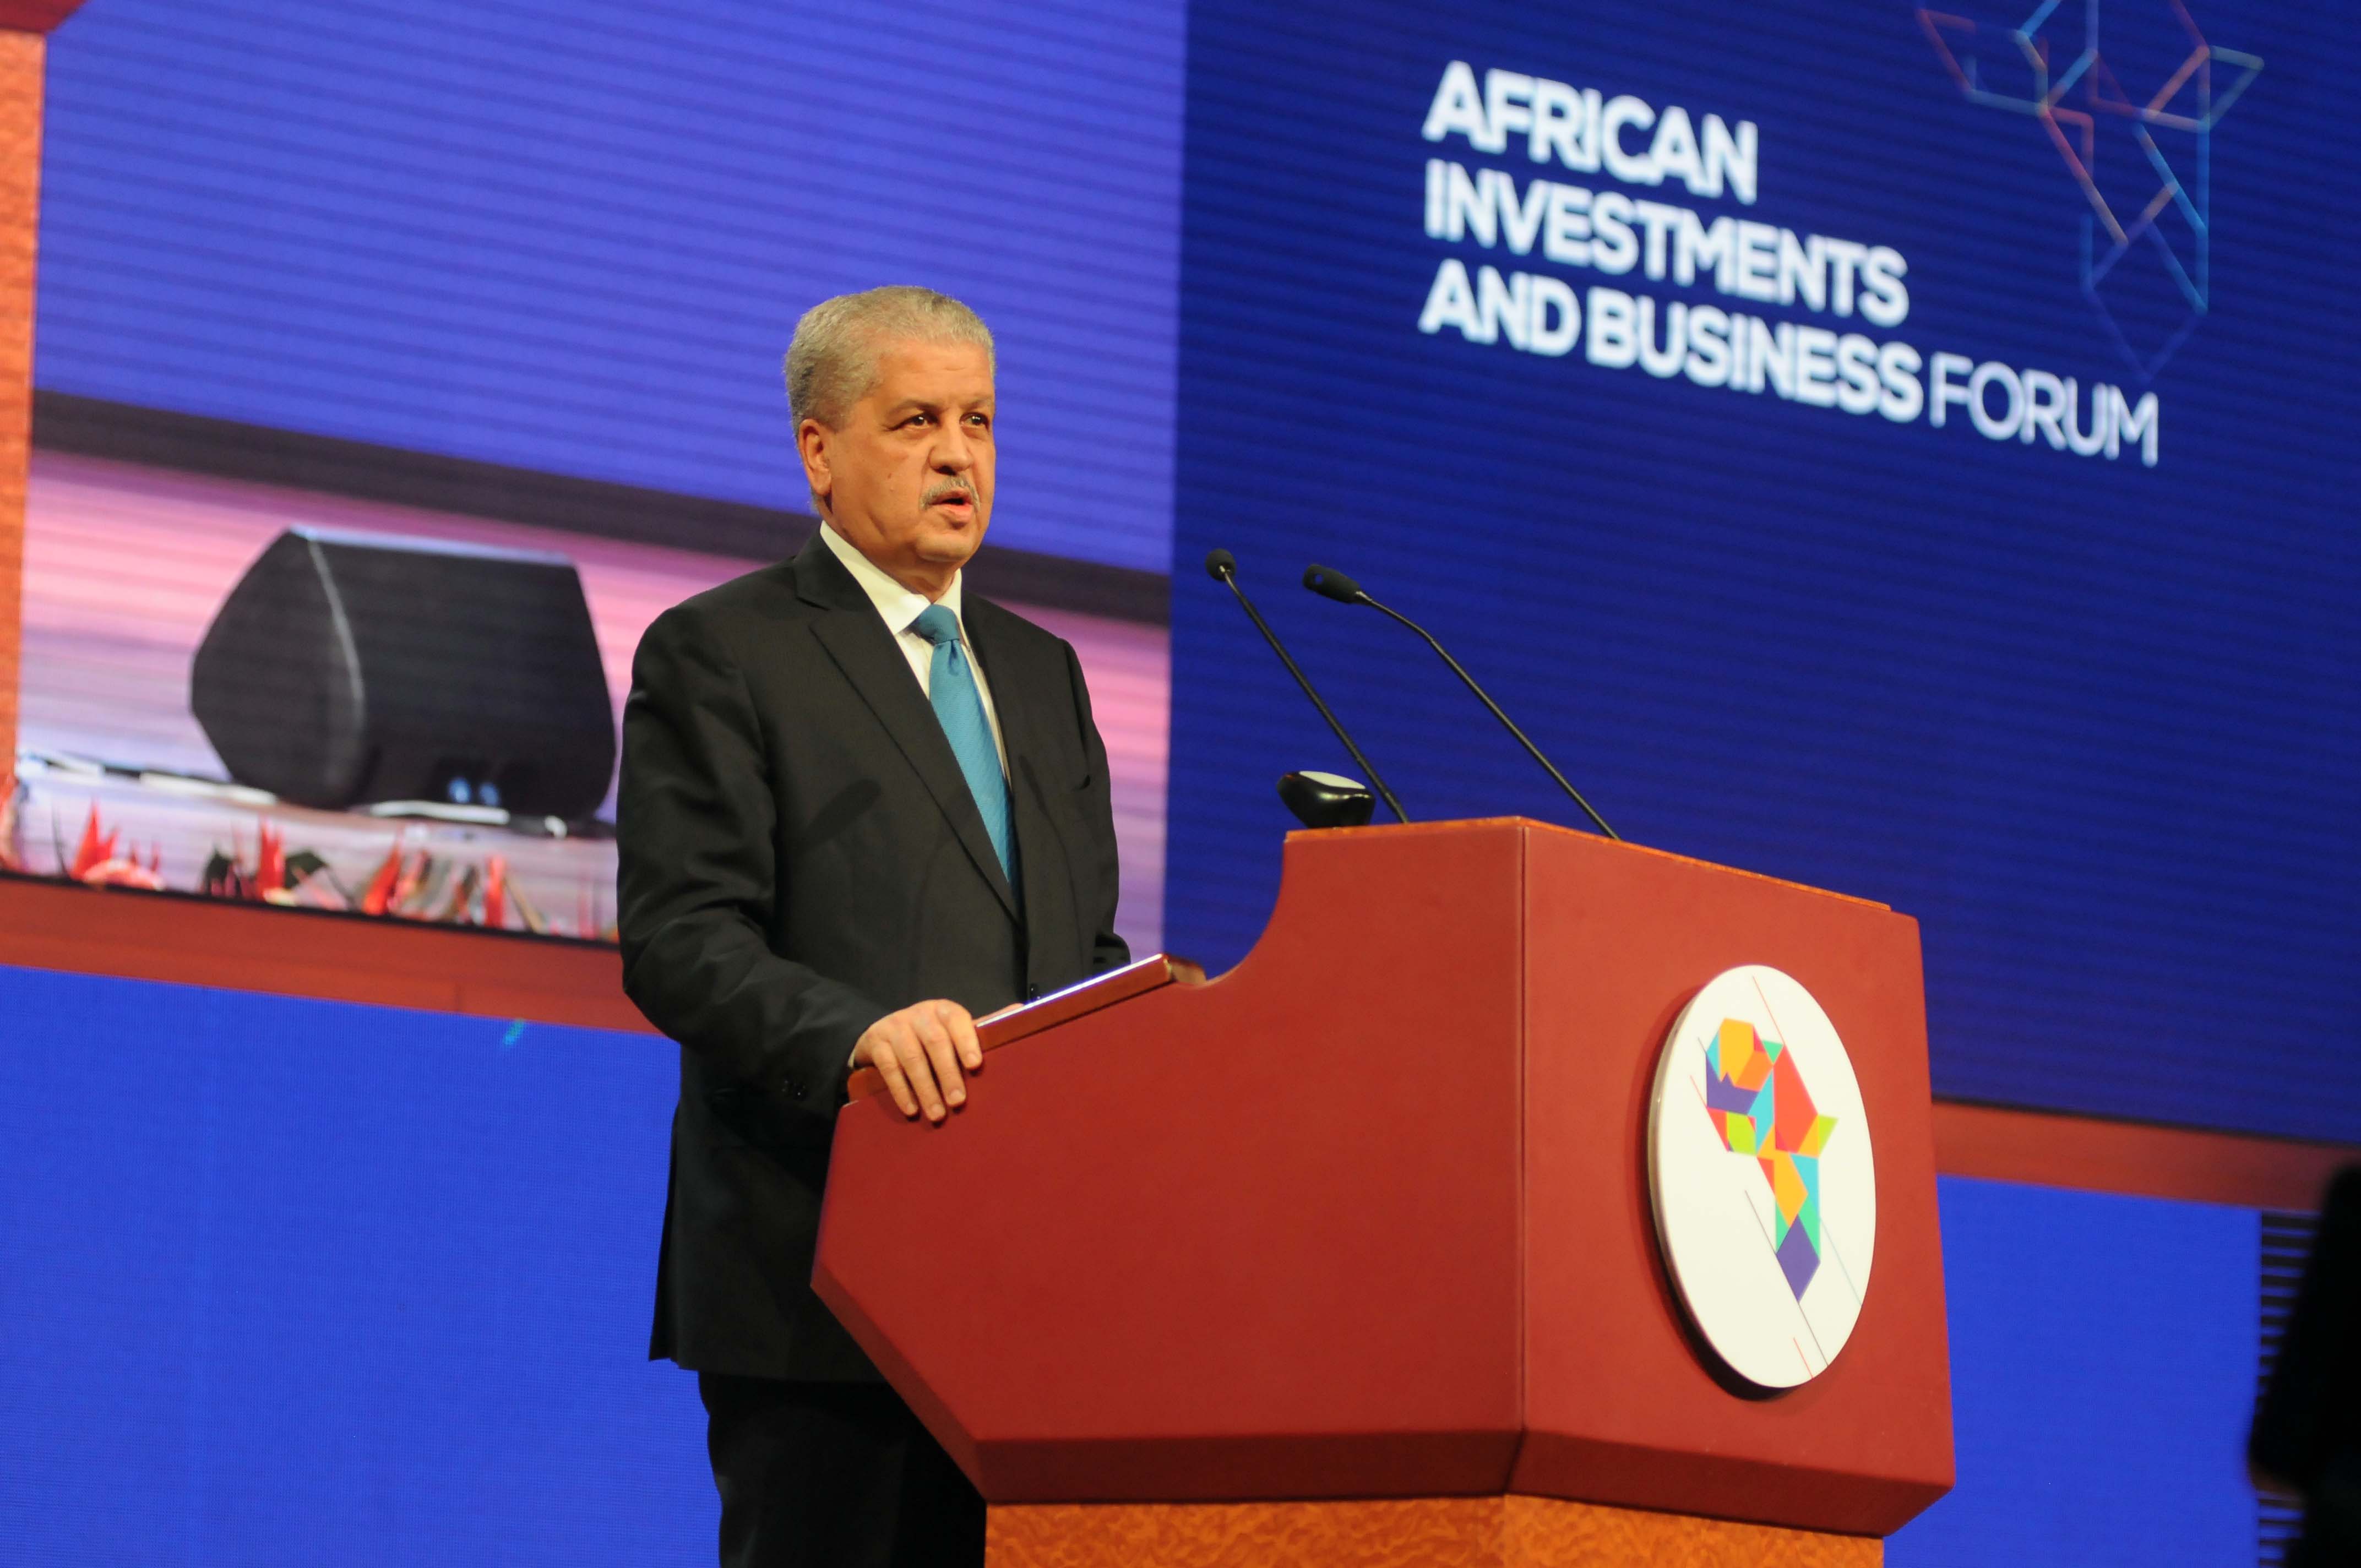 Adelmalek Sellal, lors de son intervention au Forum africain d'investissement et d'affaires. New Press